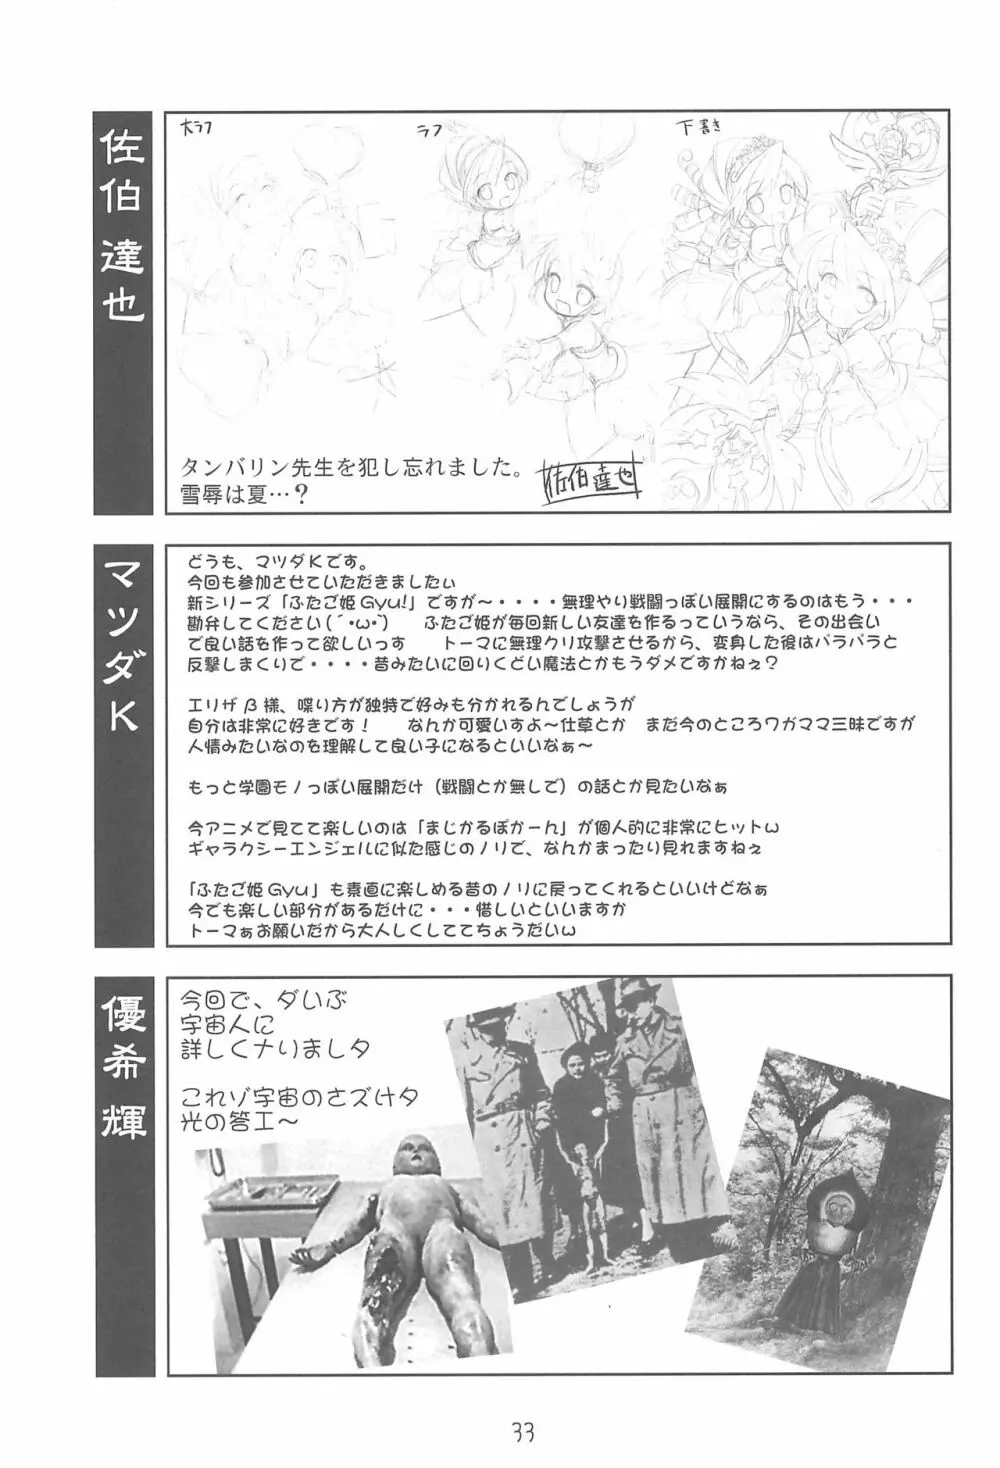 ゆるみてGyu - page33